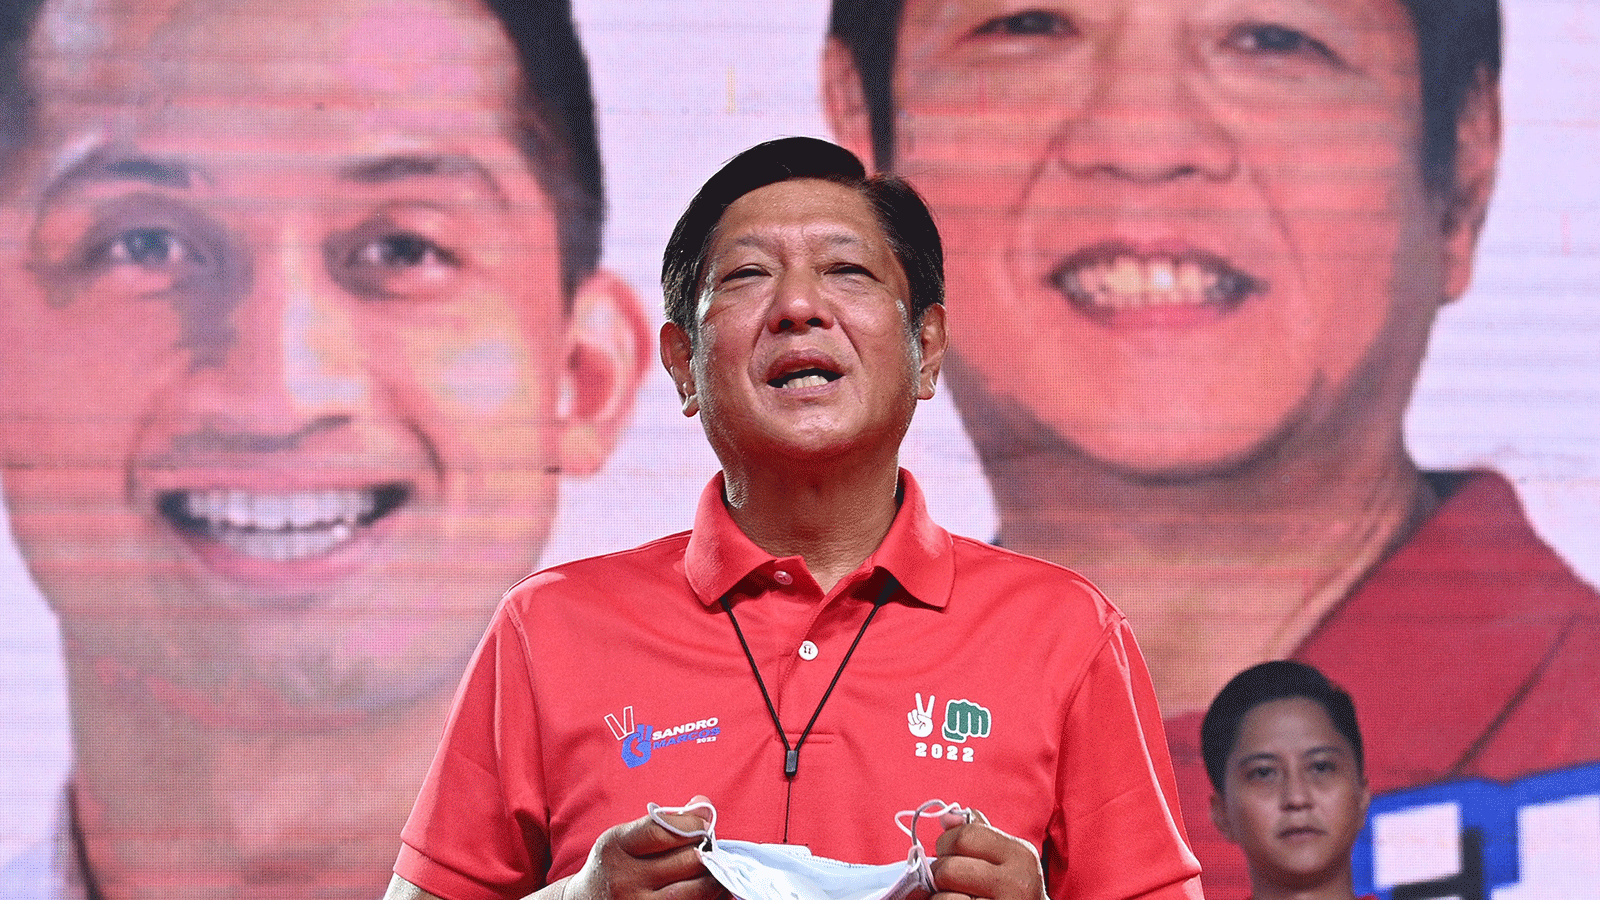 صورة التُقِطَت في 25 آذار\مارس 2022 المرشح الرئاسي الفلبيني فرديناند ماركوس جونيور، وهو يلقي خطابًا قبل تقديم ابنه فرديناند ألكسندر 